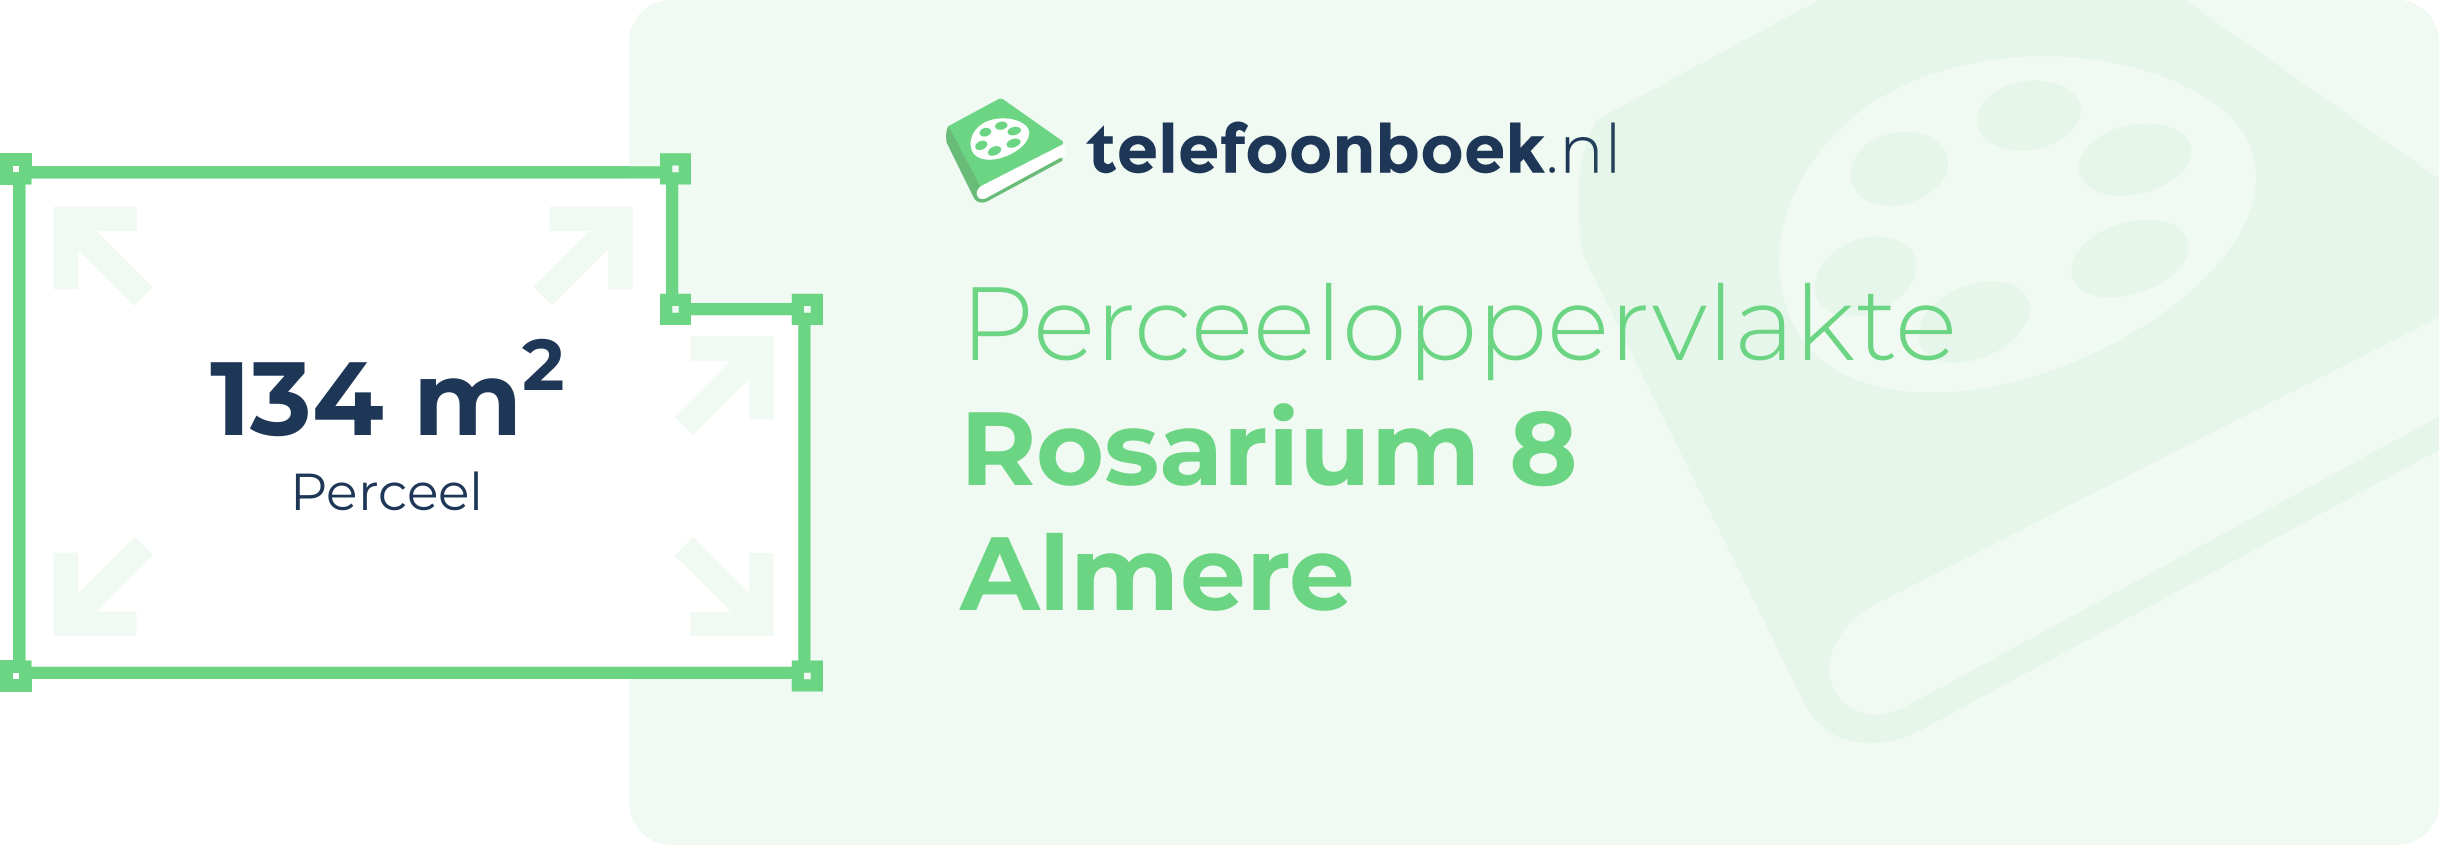 Perceeloppervlakte Rosarium 8 Almere